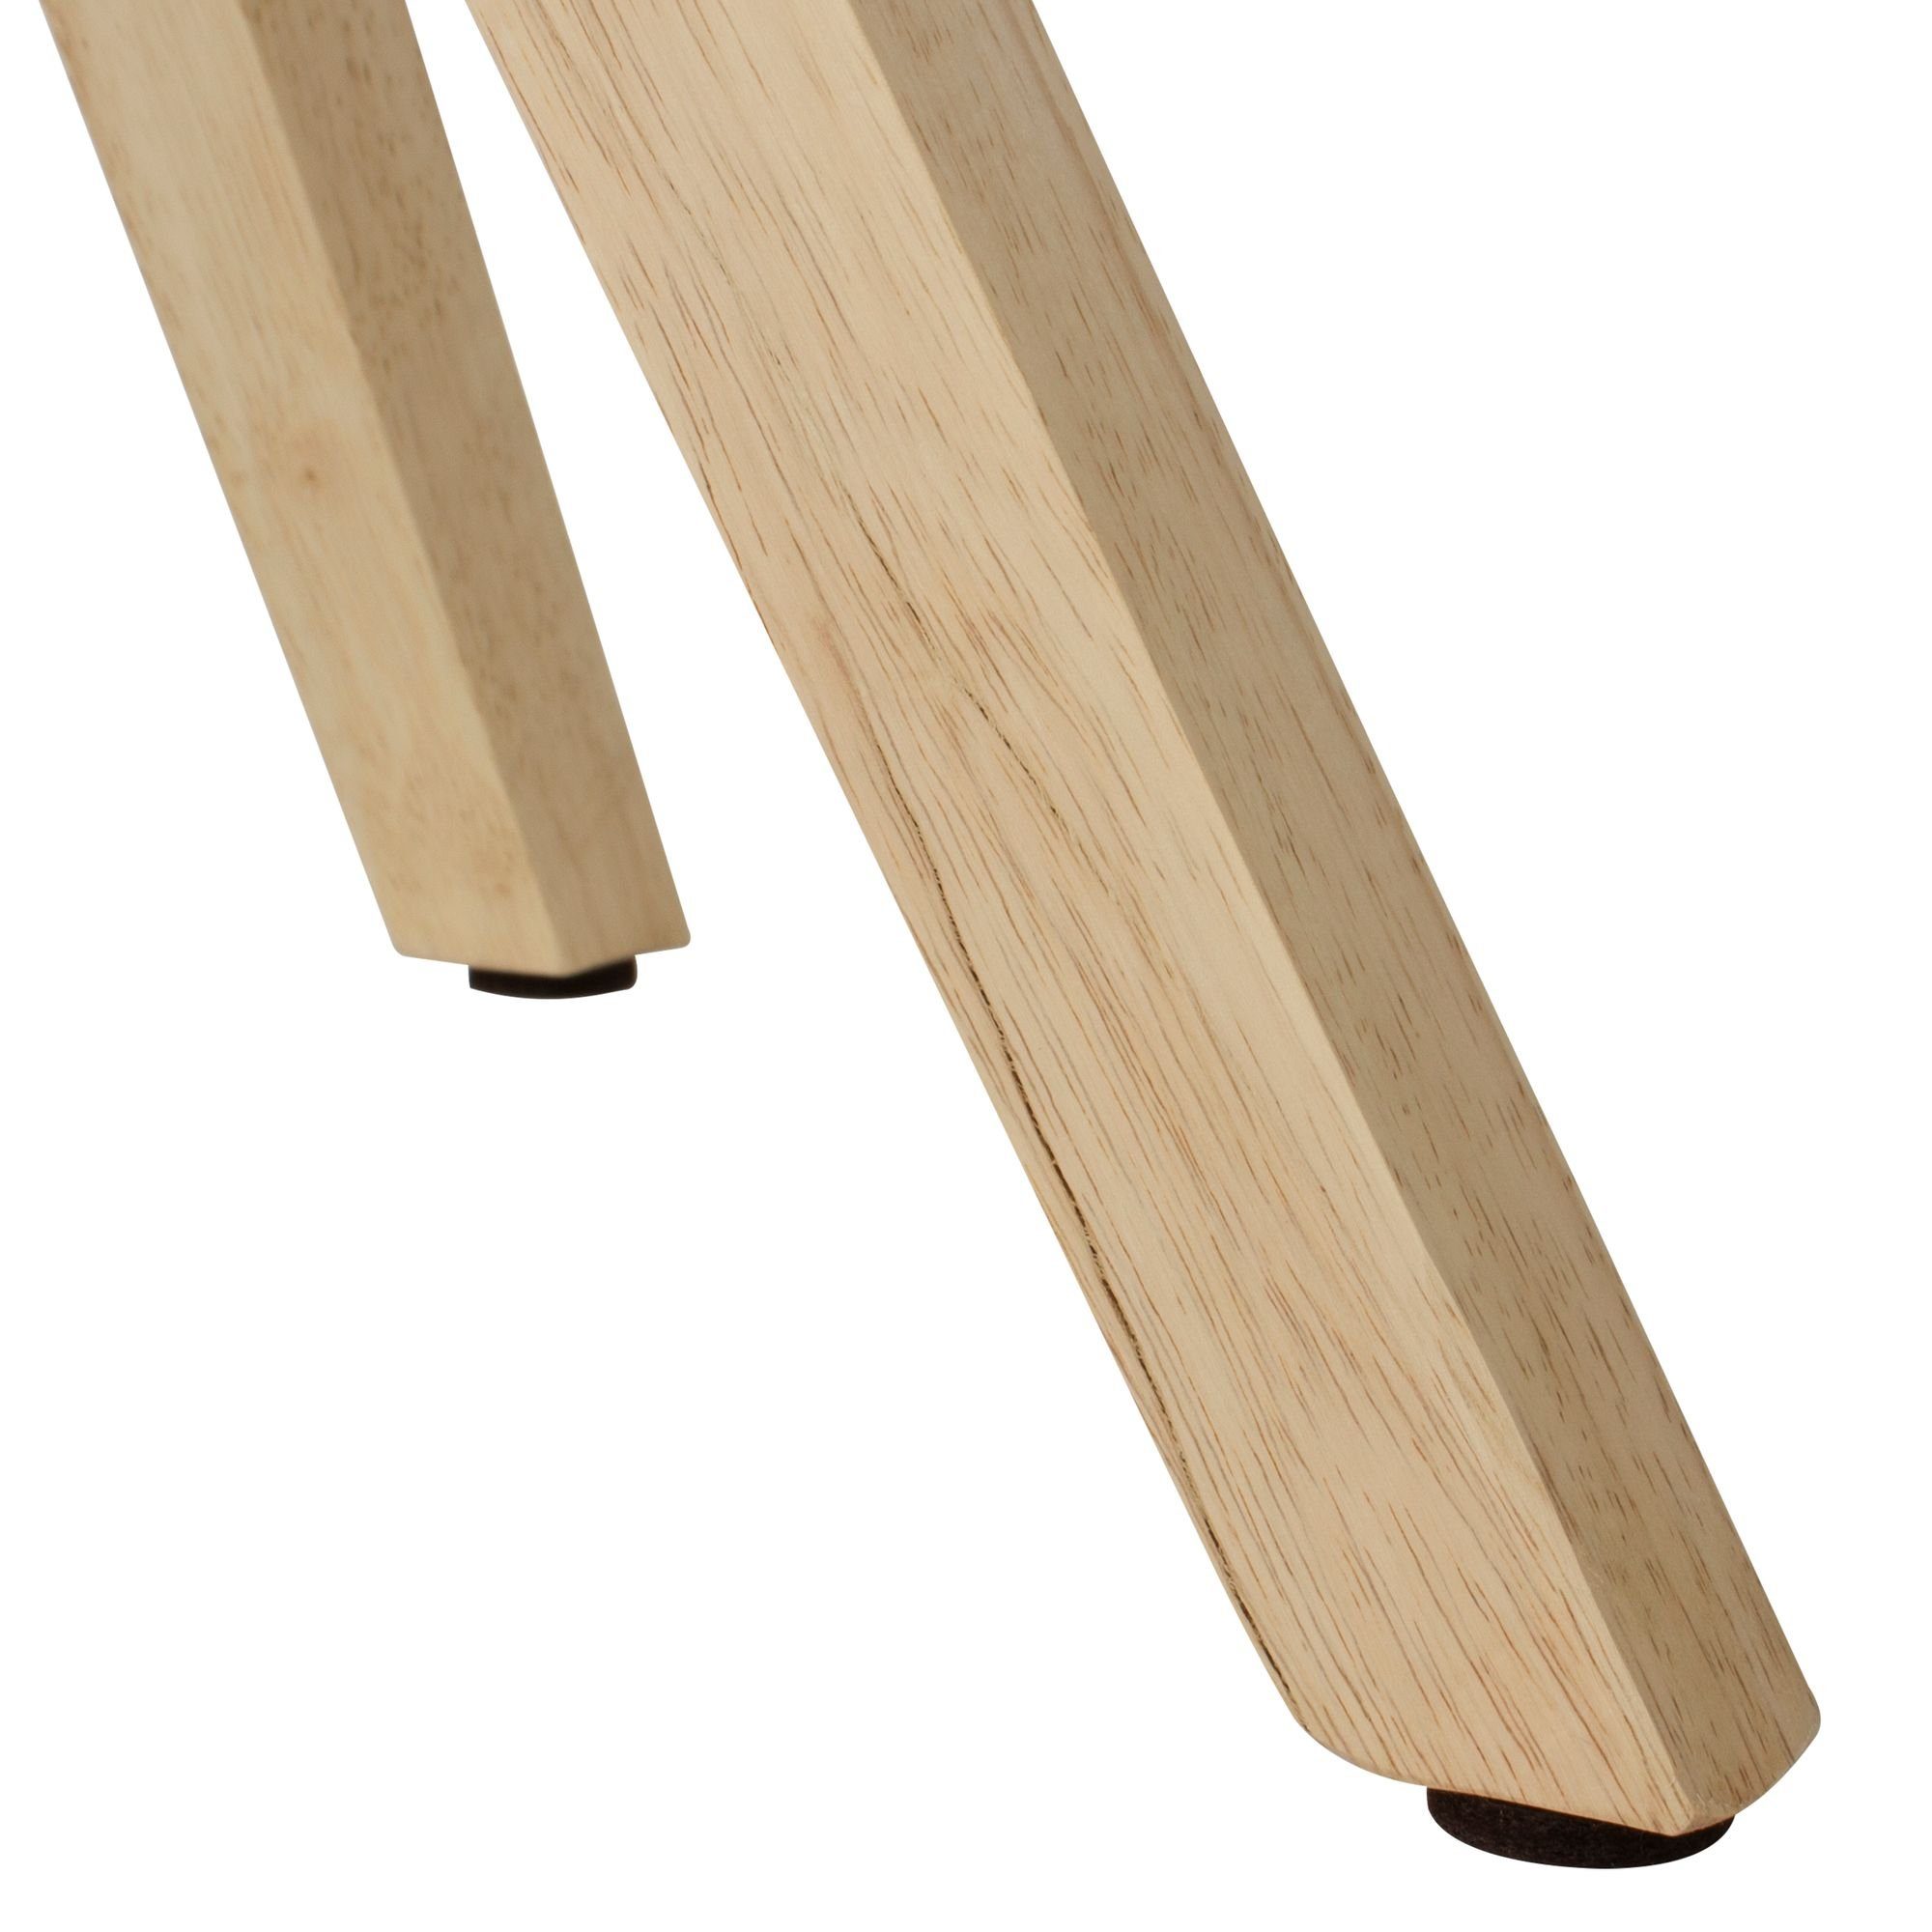 Stil Grün Skandinavischer Holzbeine Esszimmerstühle Esszimmerstuhl - Samtbezug LUND: Grün - | DESIGN KADIMA